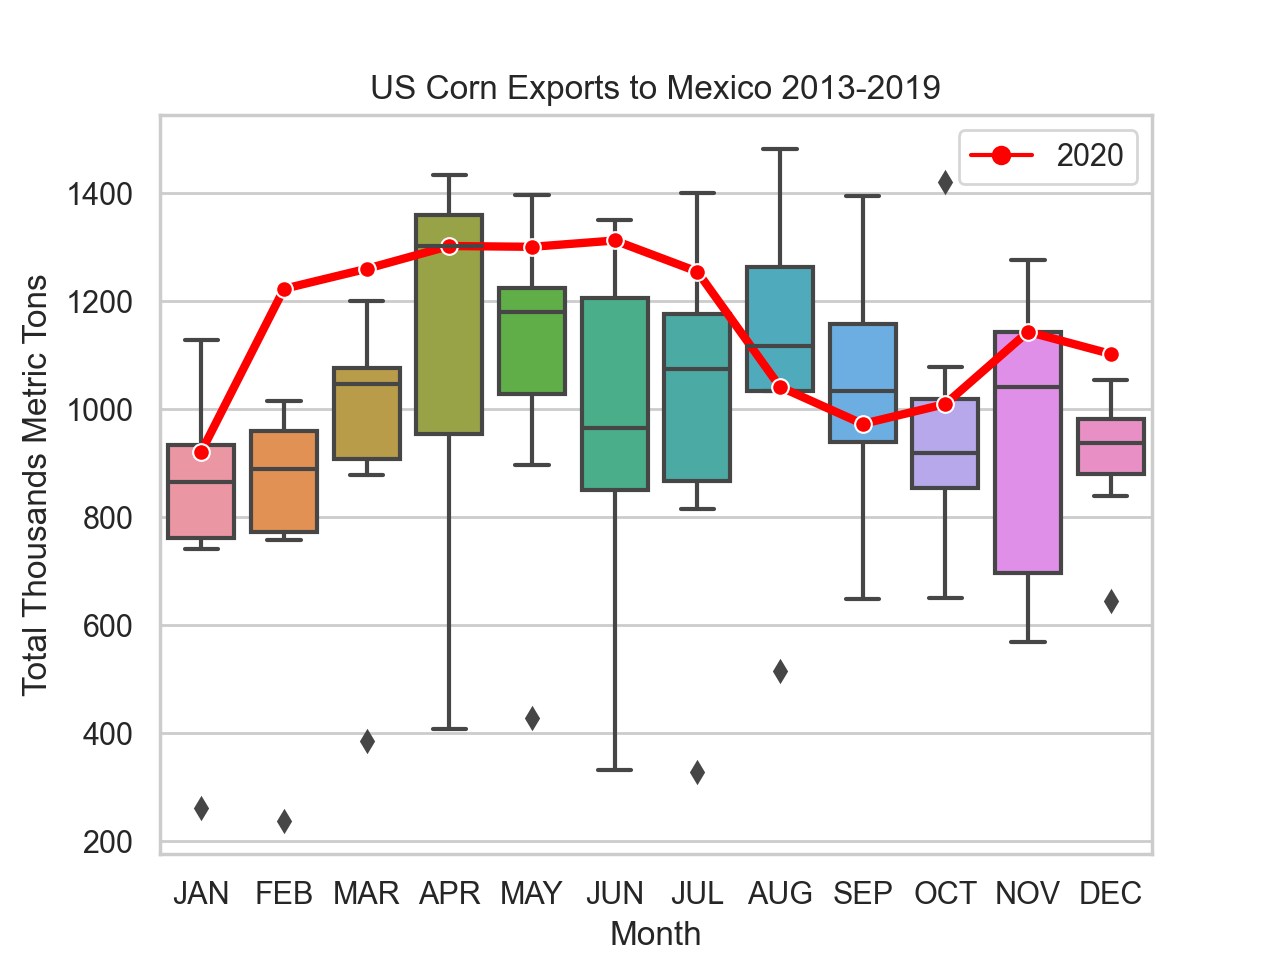 Figura 12: Exportaciones de maíz de EE.UU. a México 2013-2019 VS 2020. Fuente de datos: USDA AMS Federal Grain Inspection Service, accedido en https://fgisonline.ams.usda.gov/ExportGrainReport/ el 4 de abril de 2021